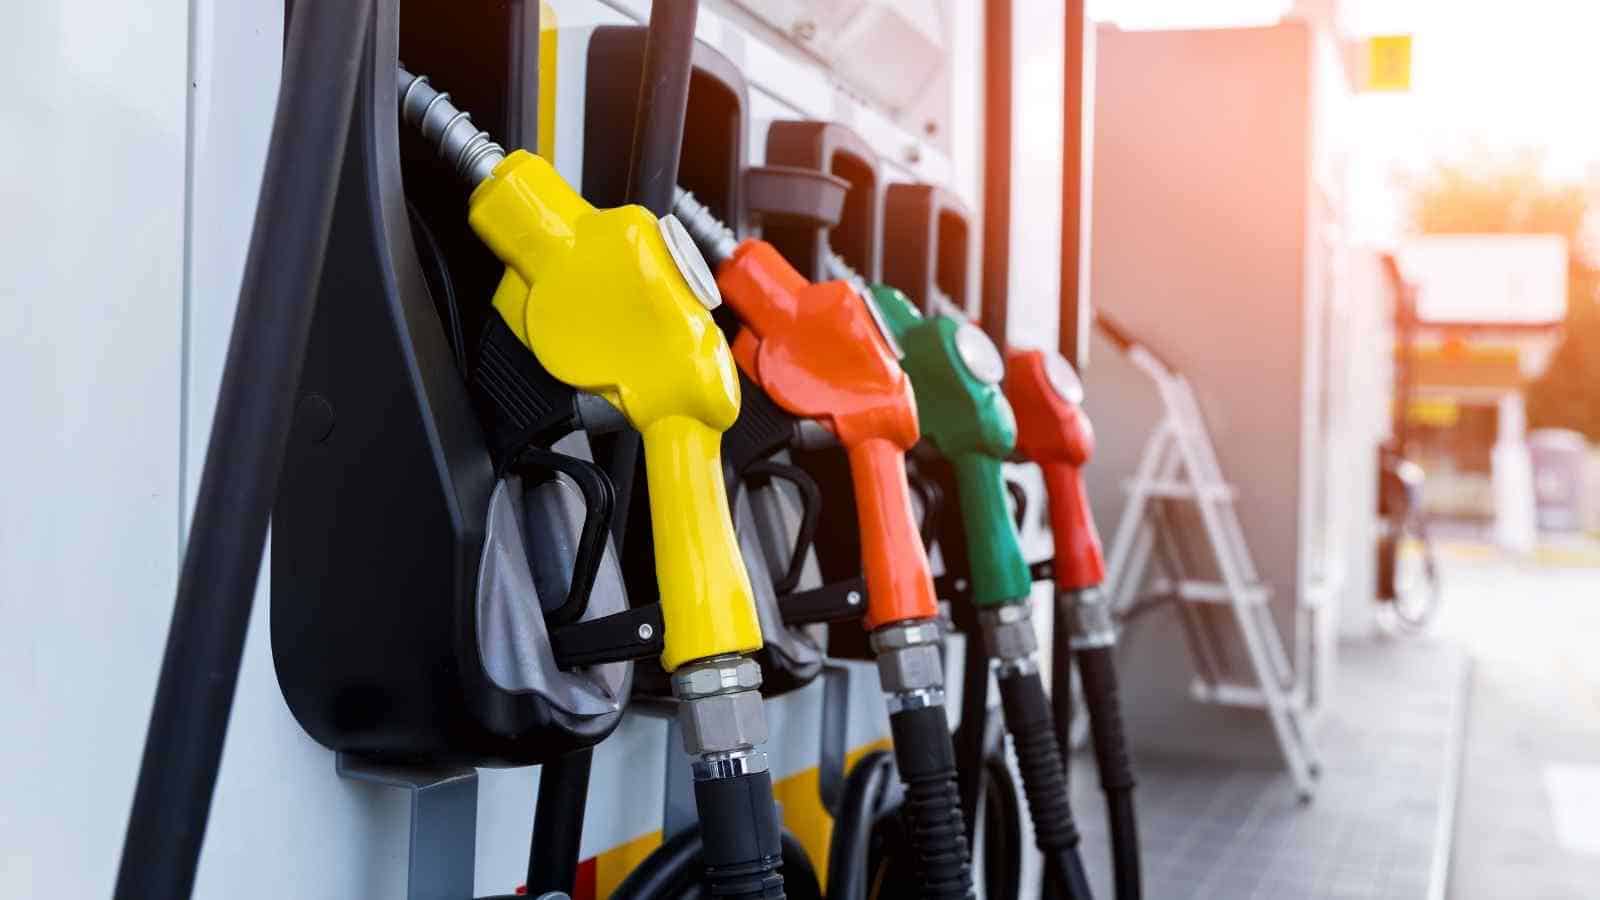 Finalmente il prezzo del carburante torna a calare, per la felicità di tutti i consumatori